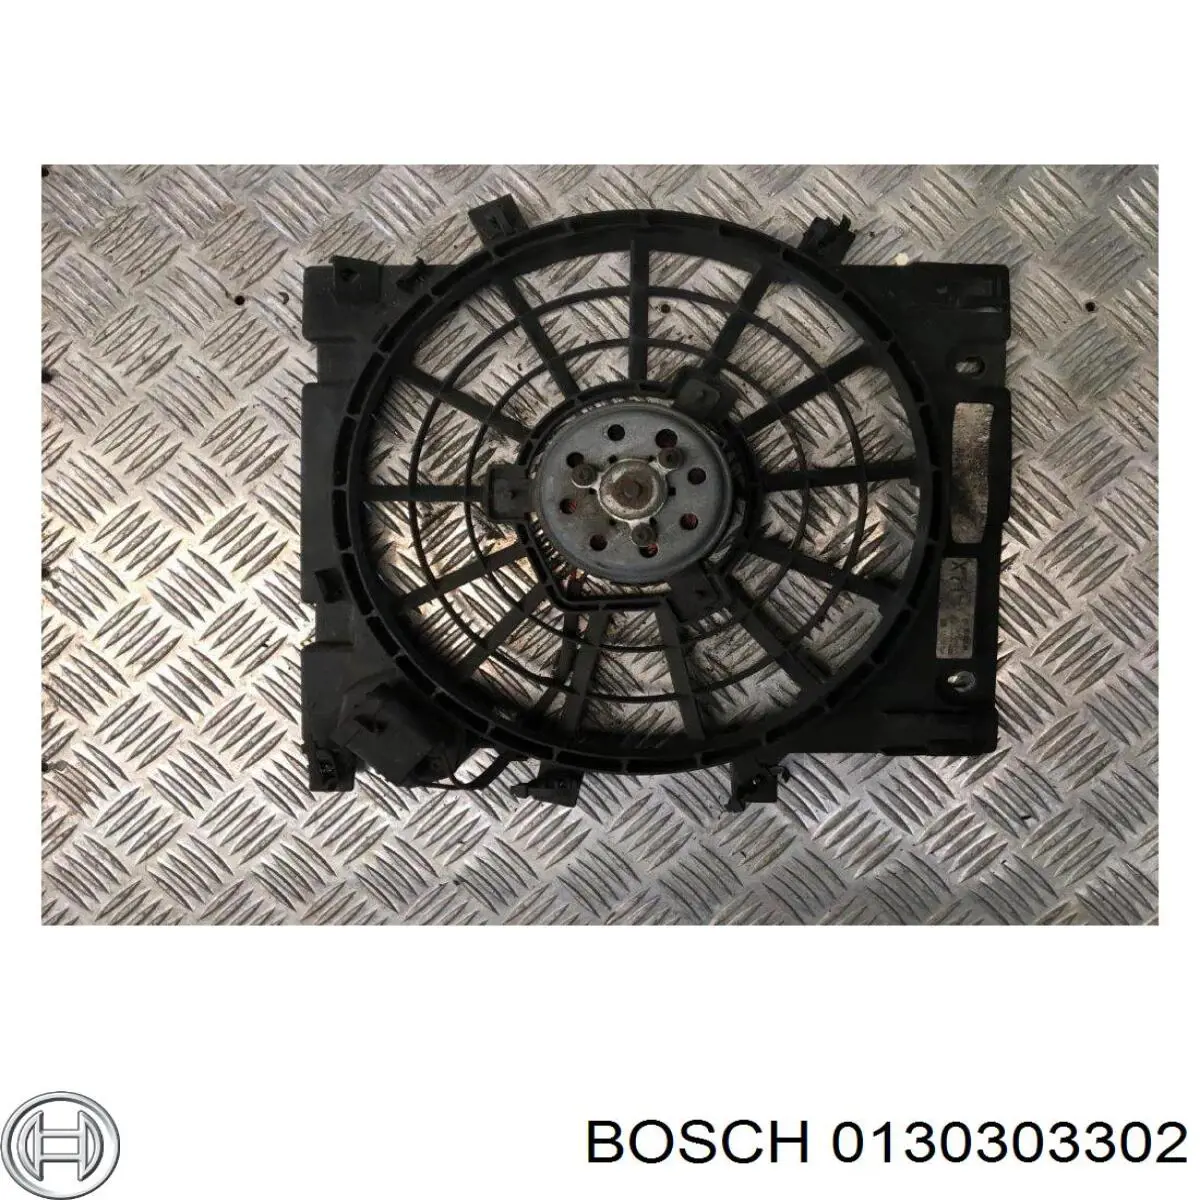 0130303302 Bosch ventilador elétrico de esfriamento montado (motor + roda de aletas)